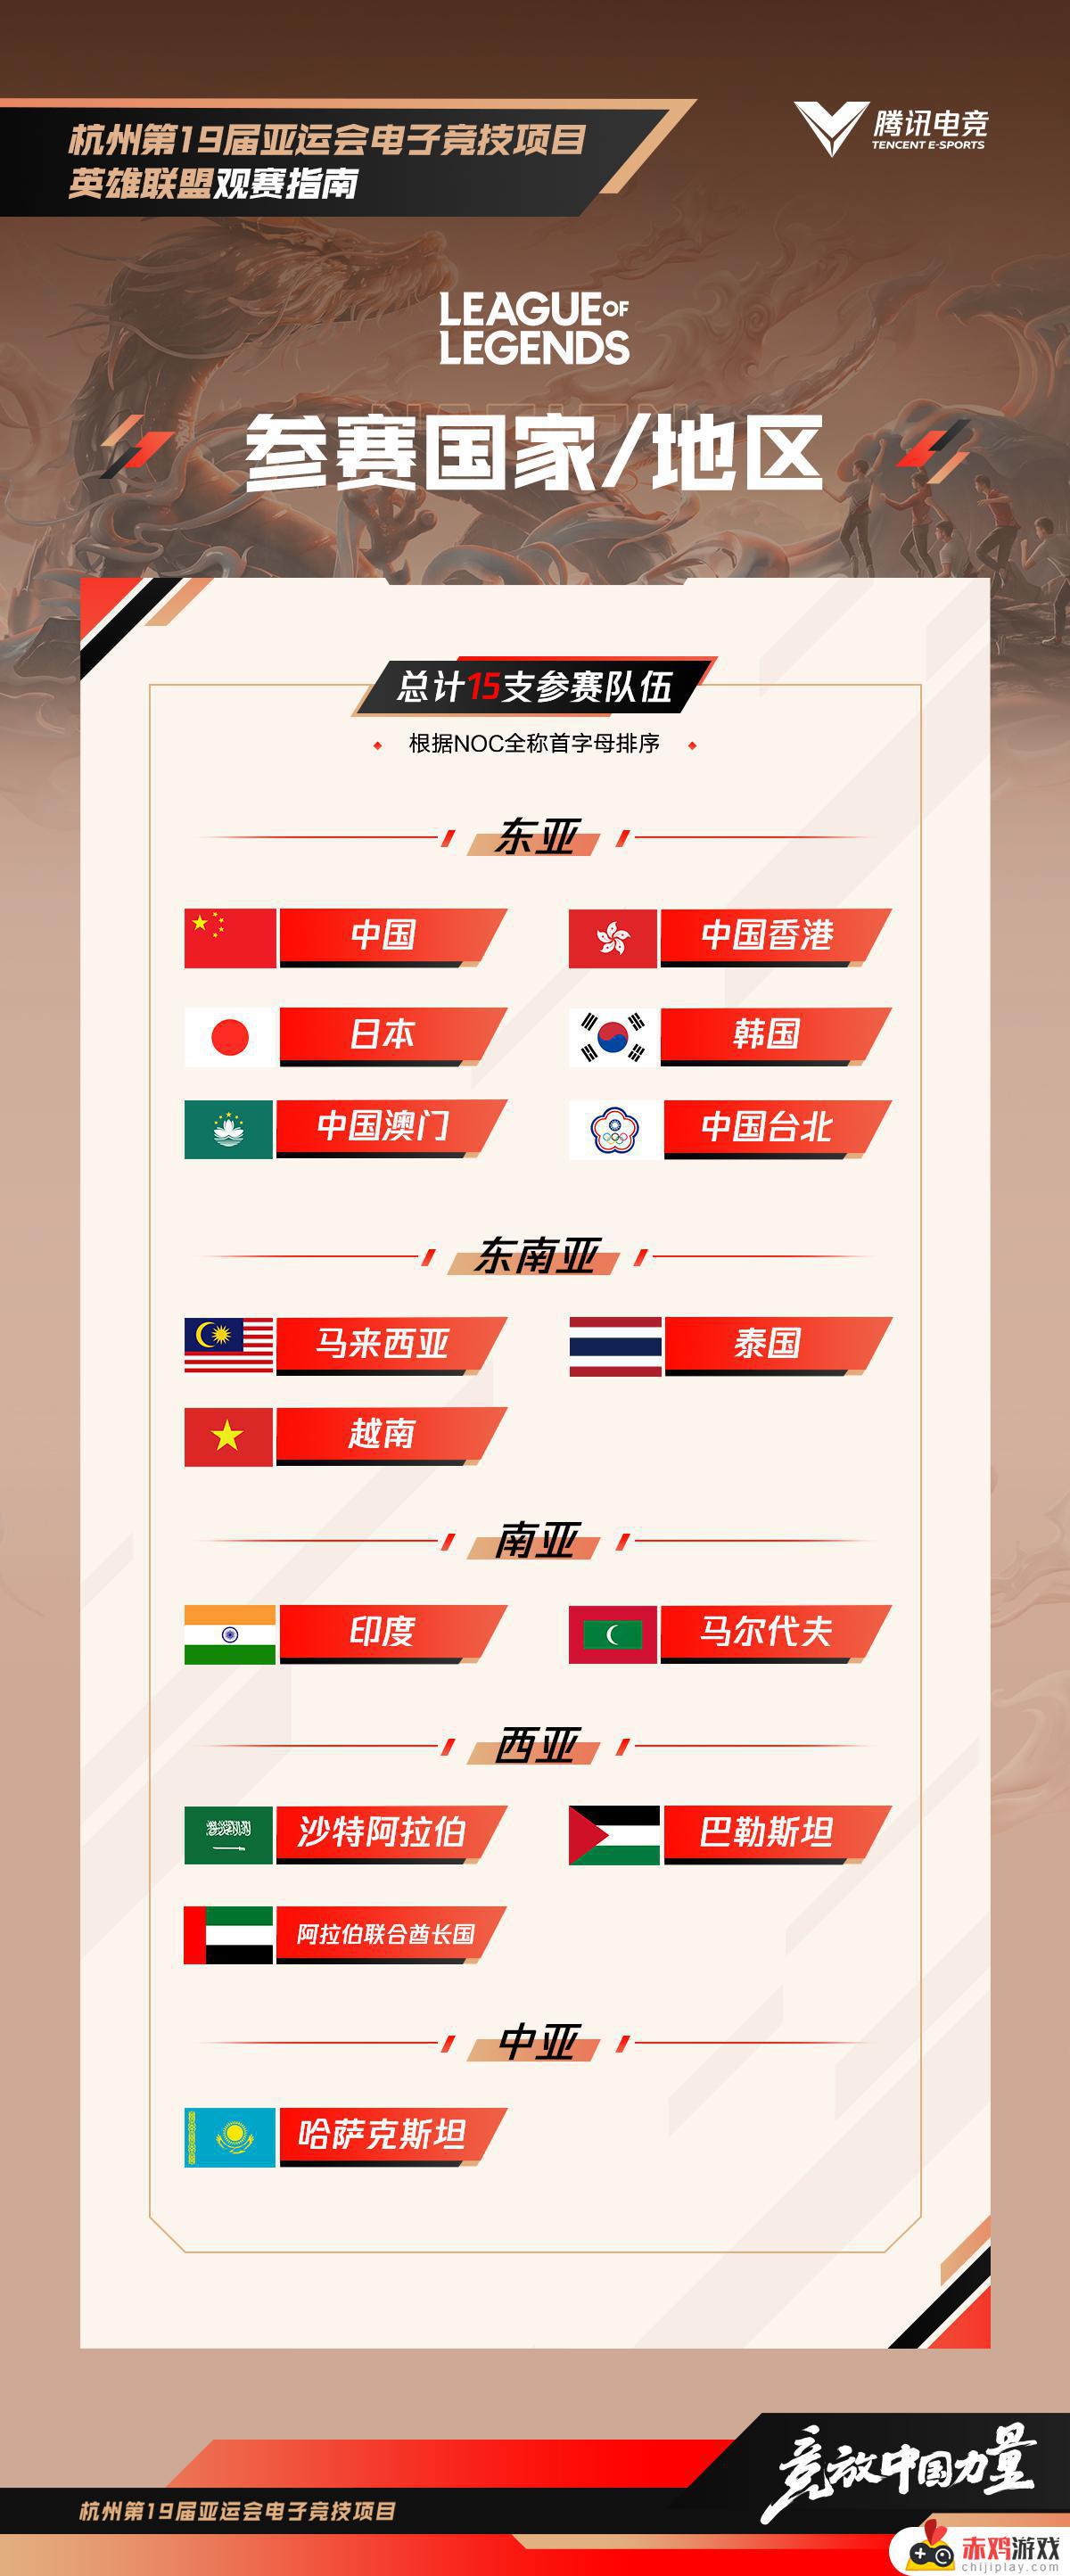 杭州亚运会英雄联盟抽签结果及观赛指南